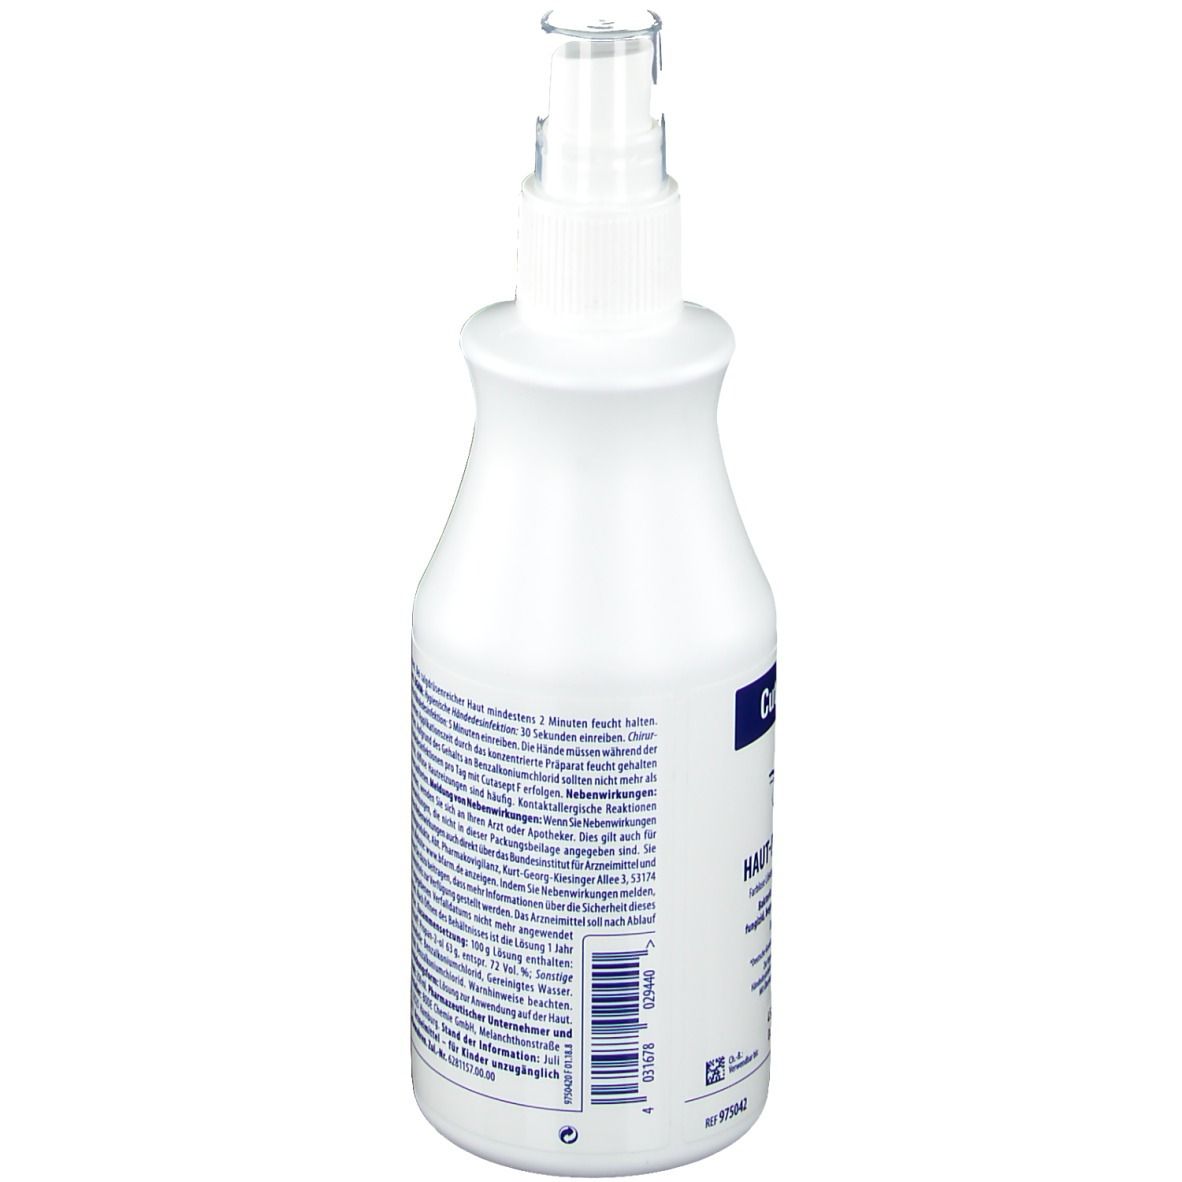 Asept Desinfektionsspray 100 ml - SHOP APOTHEKE